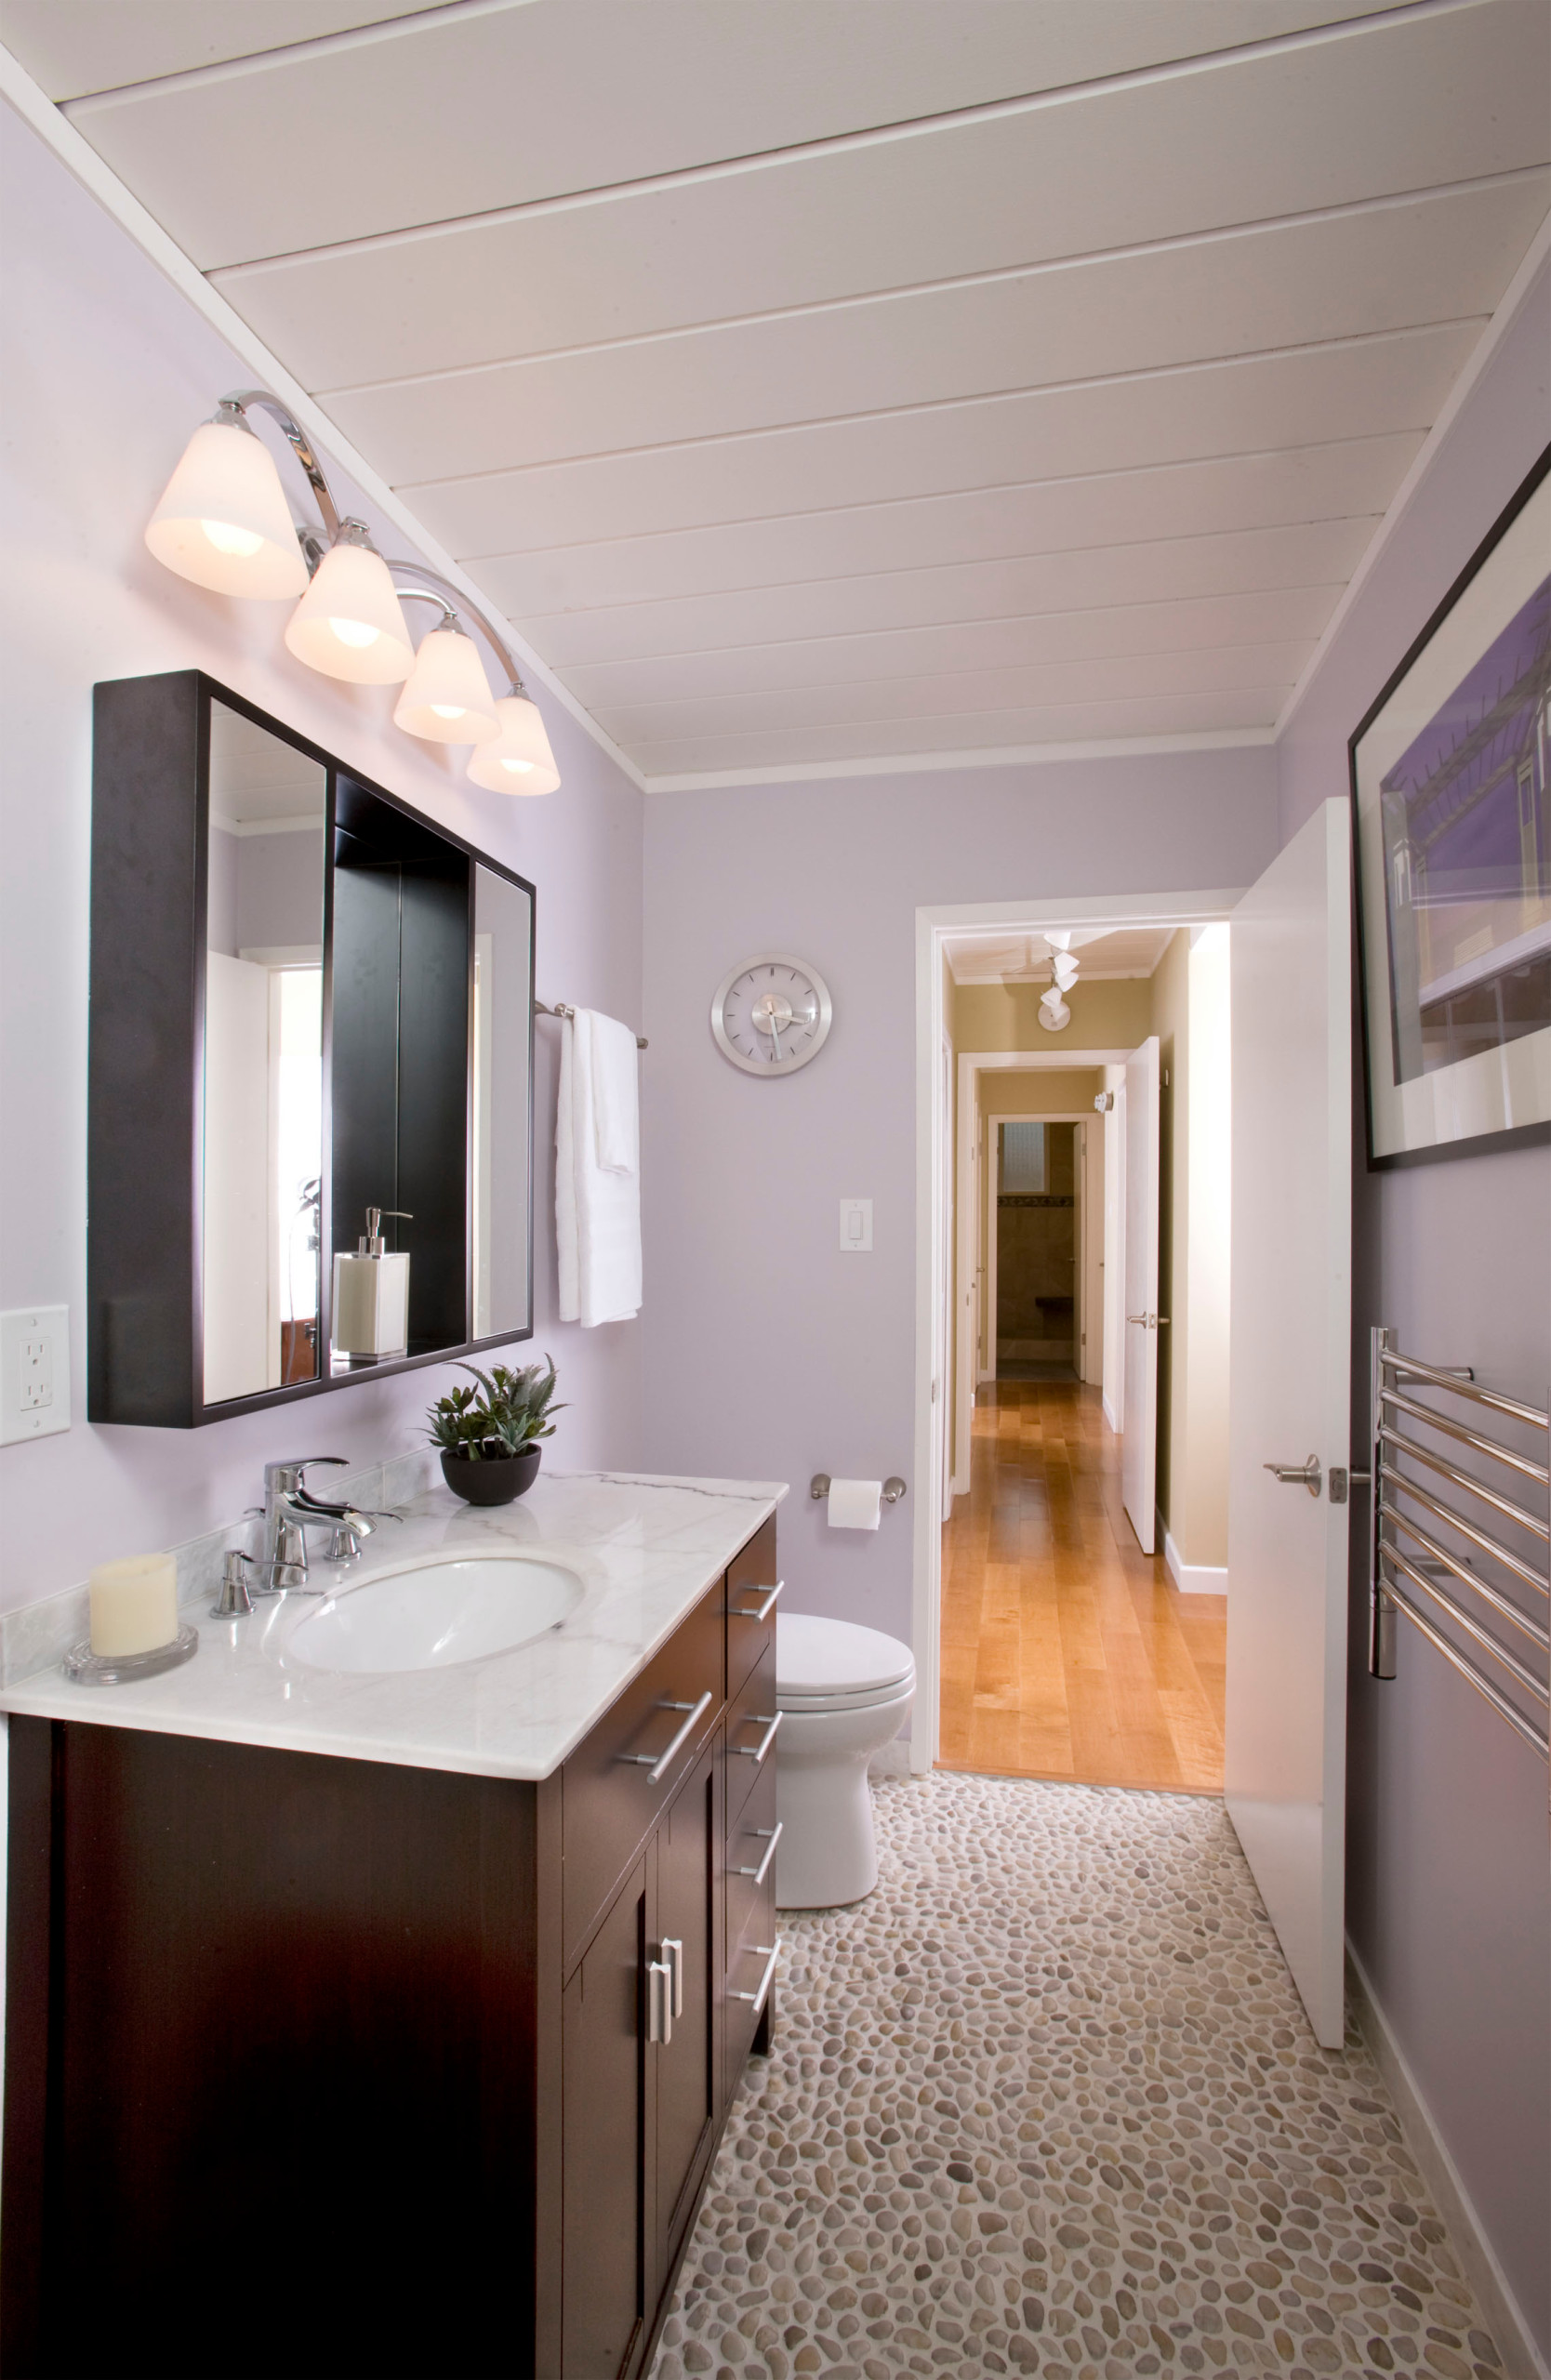 75 Shiplap Ceiling Bathroom Ideas You